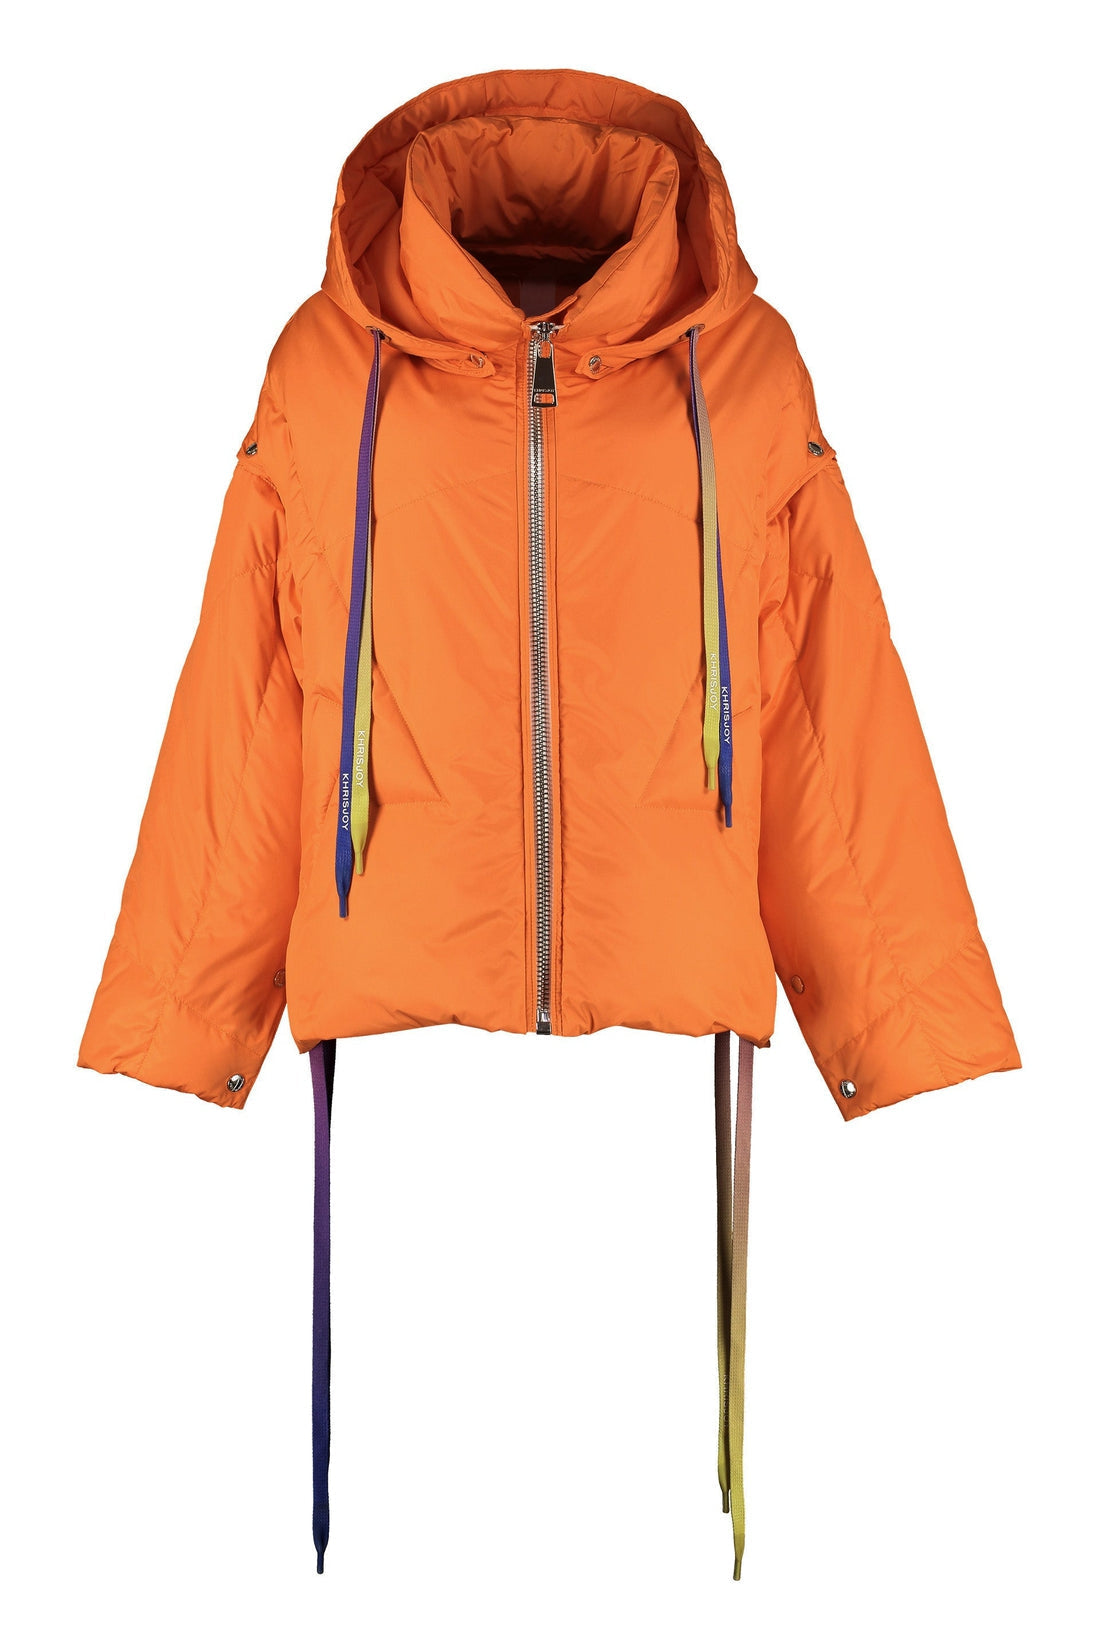 Khrisjoy-OUTLET-SALE-Khris hooded oversize down jacket-ARCHIVIST